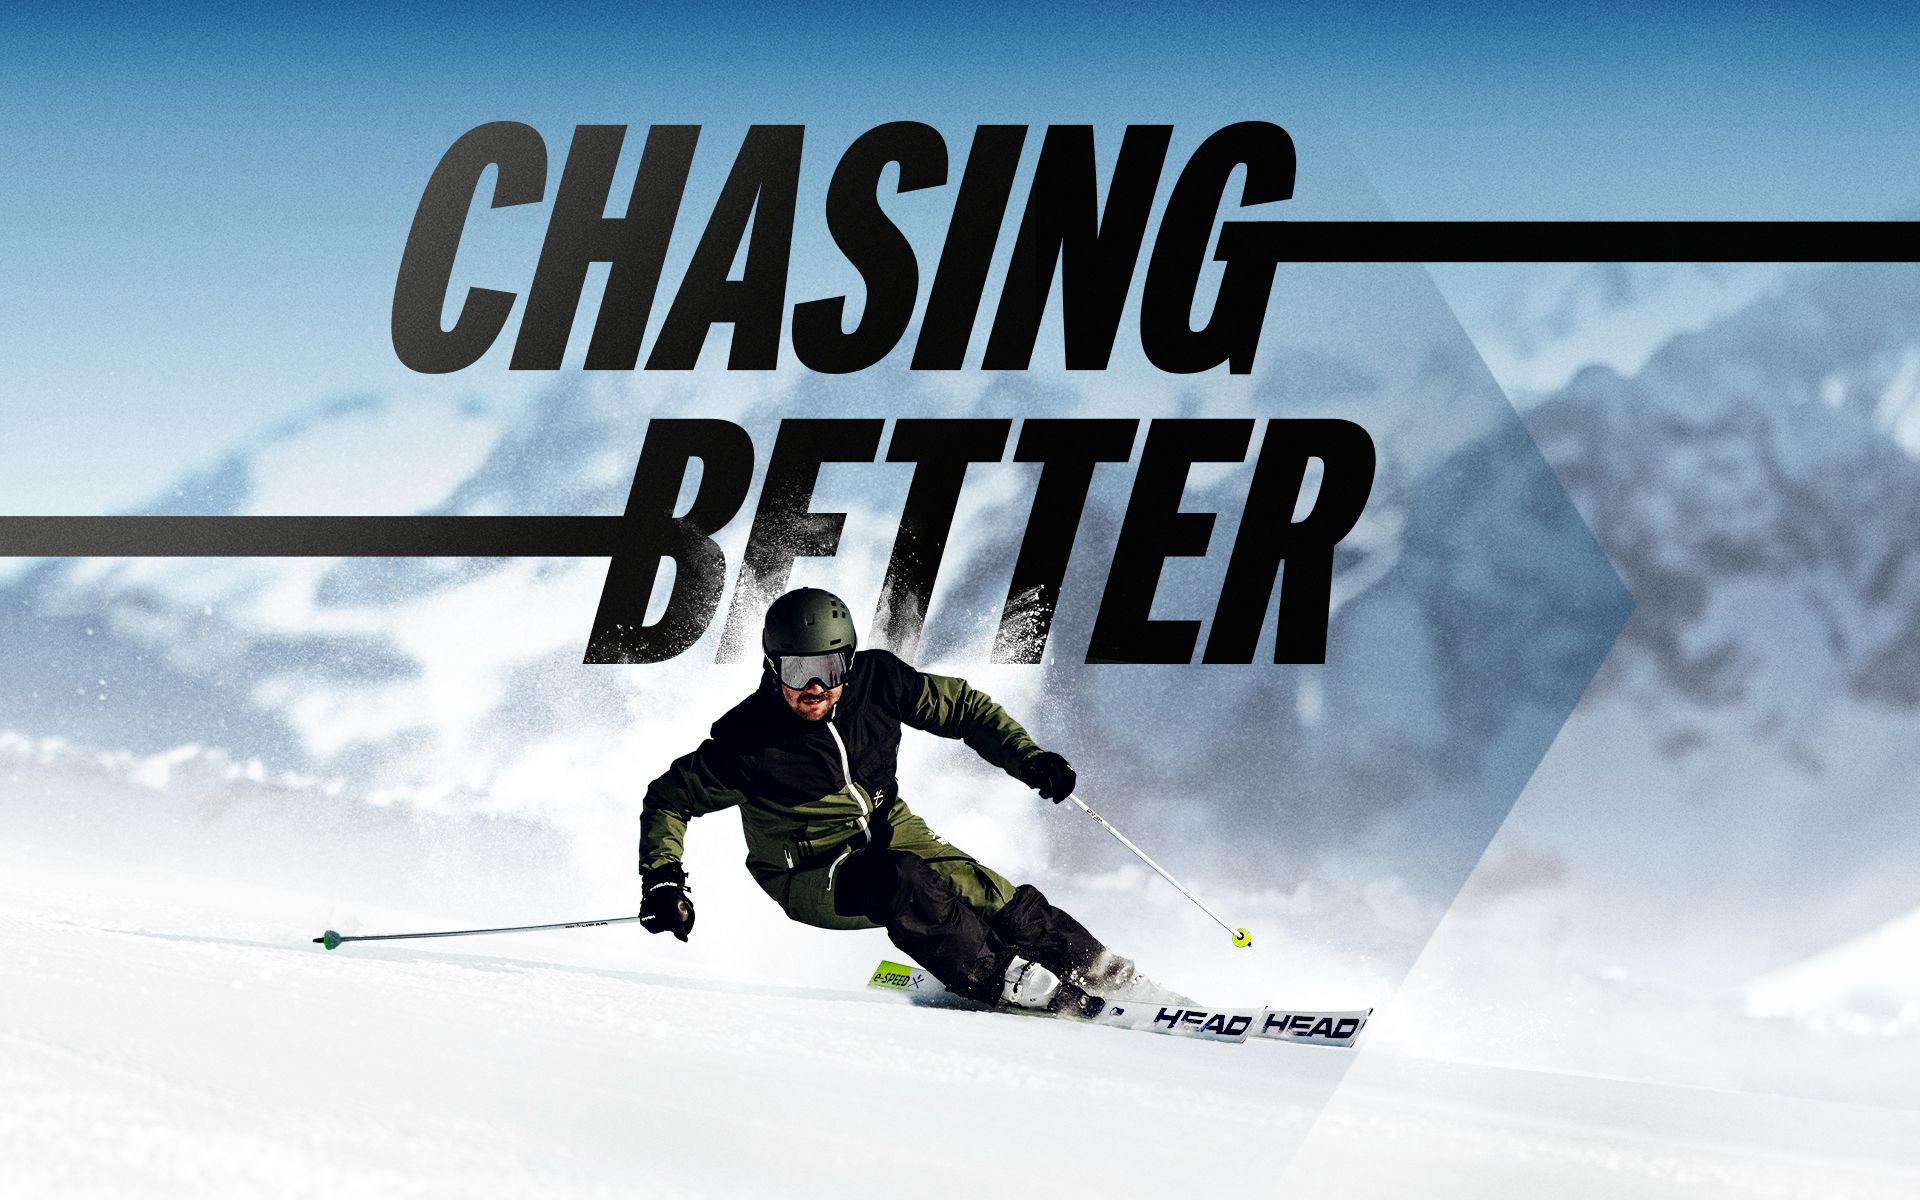 Chasing Better. Toda una declaración de principios de HEAD Ski & Snowboard